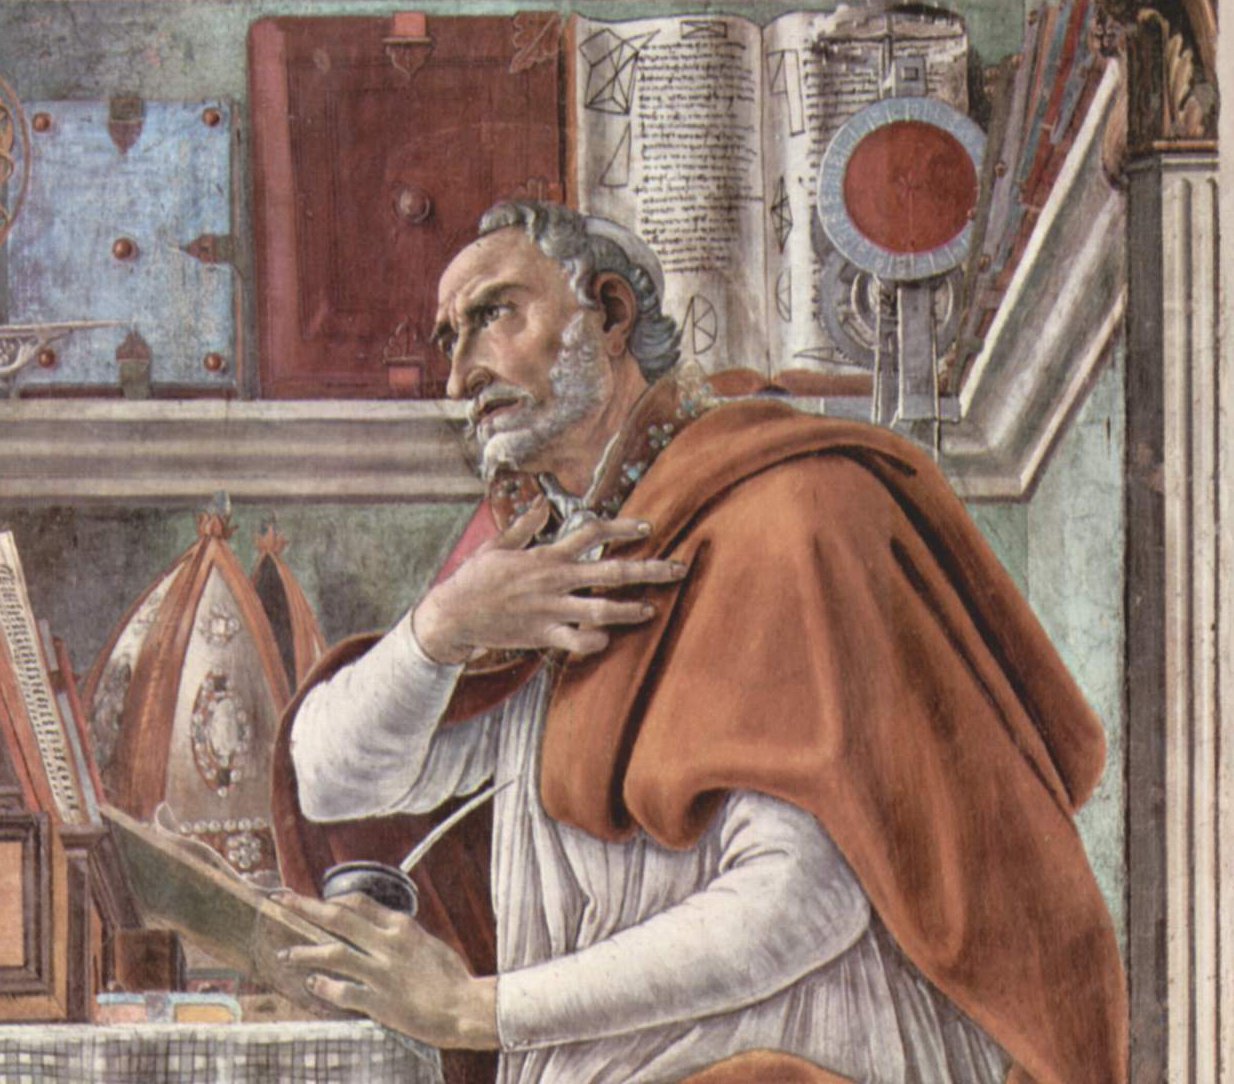 Sandro+Botticelli-1445-1510 (243).jpg